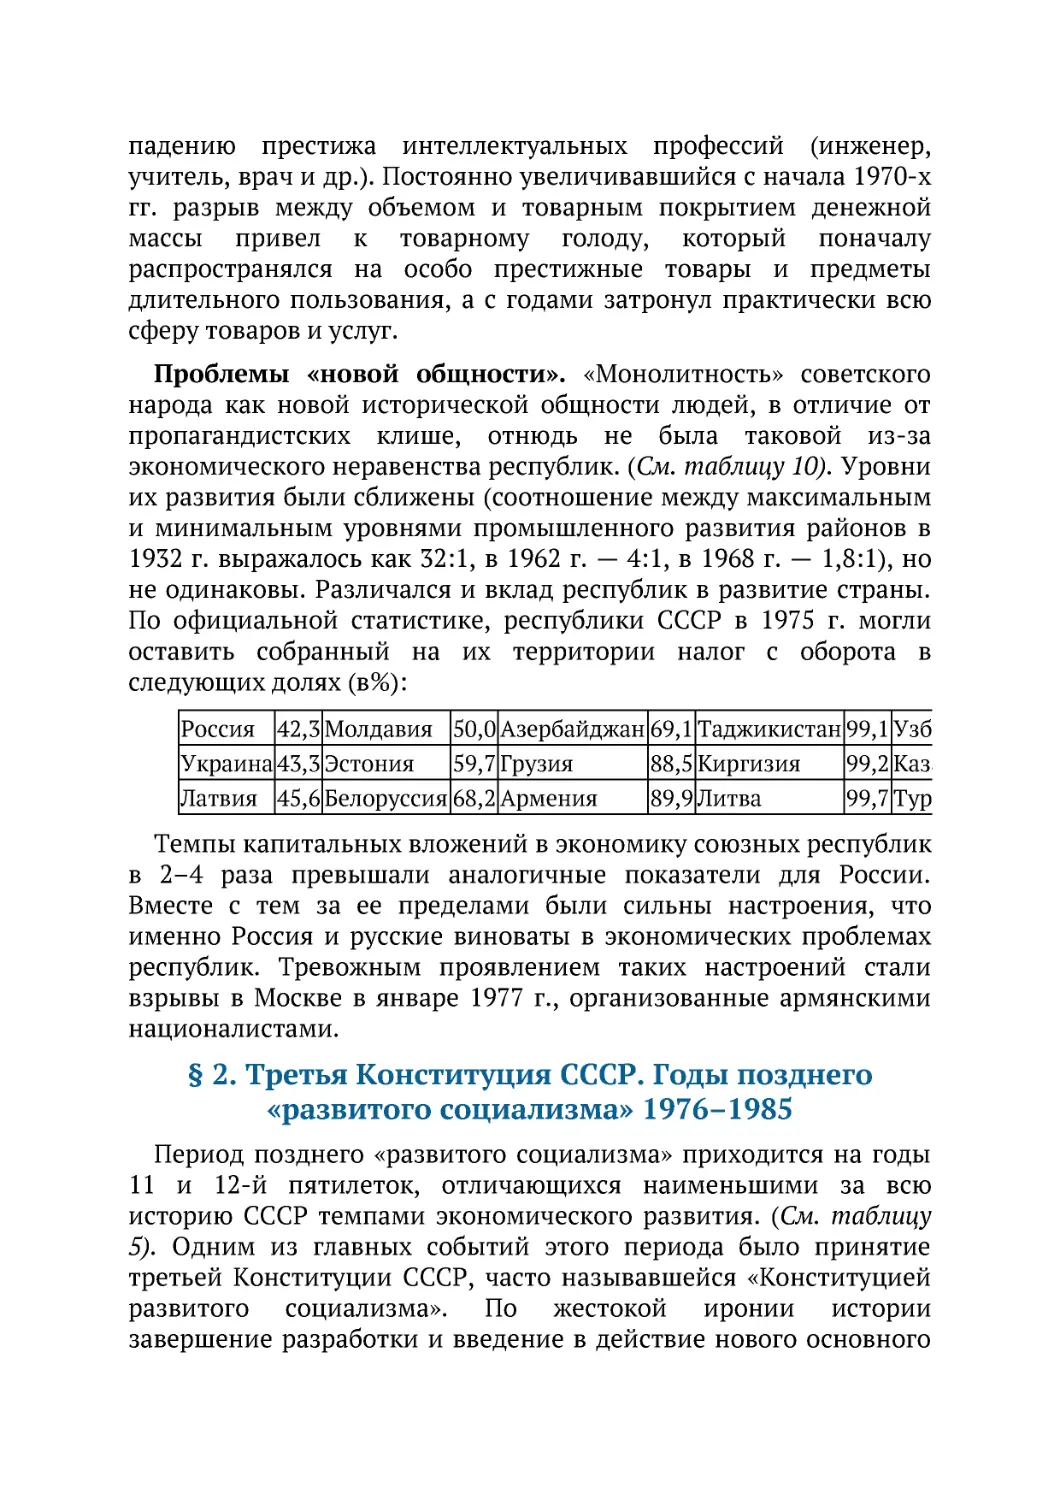 ﻿§ 2. Третья Конституция СССР. Годы позднего «развитого социализма» 1976–198